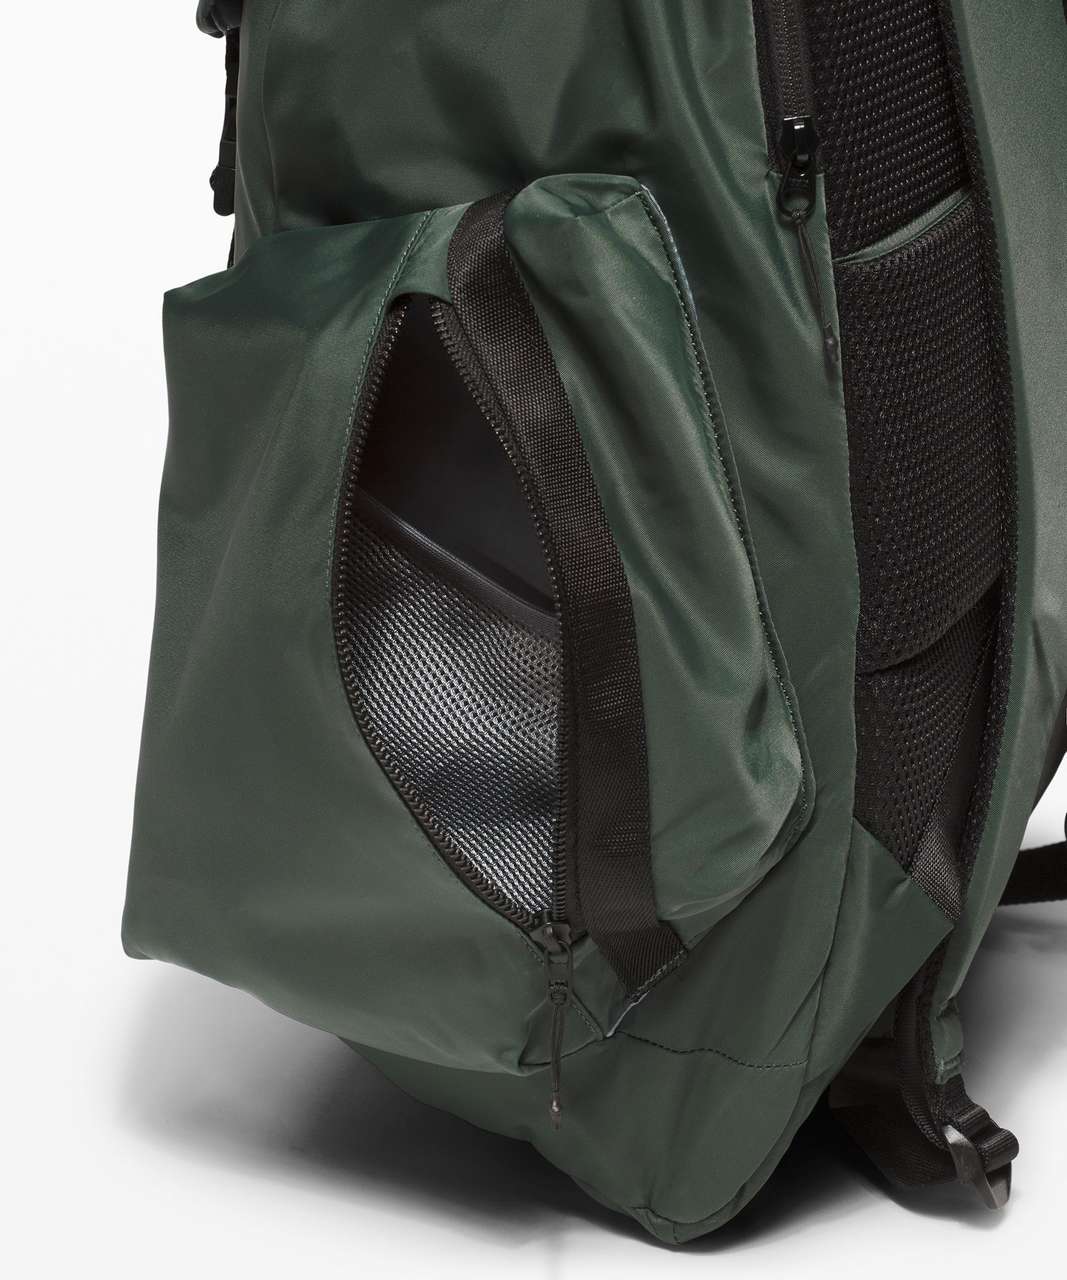 Lululemon Urban Nomad Large Backpack 35L - Smoked Spruce / Black